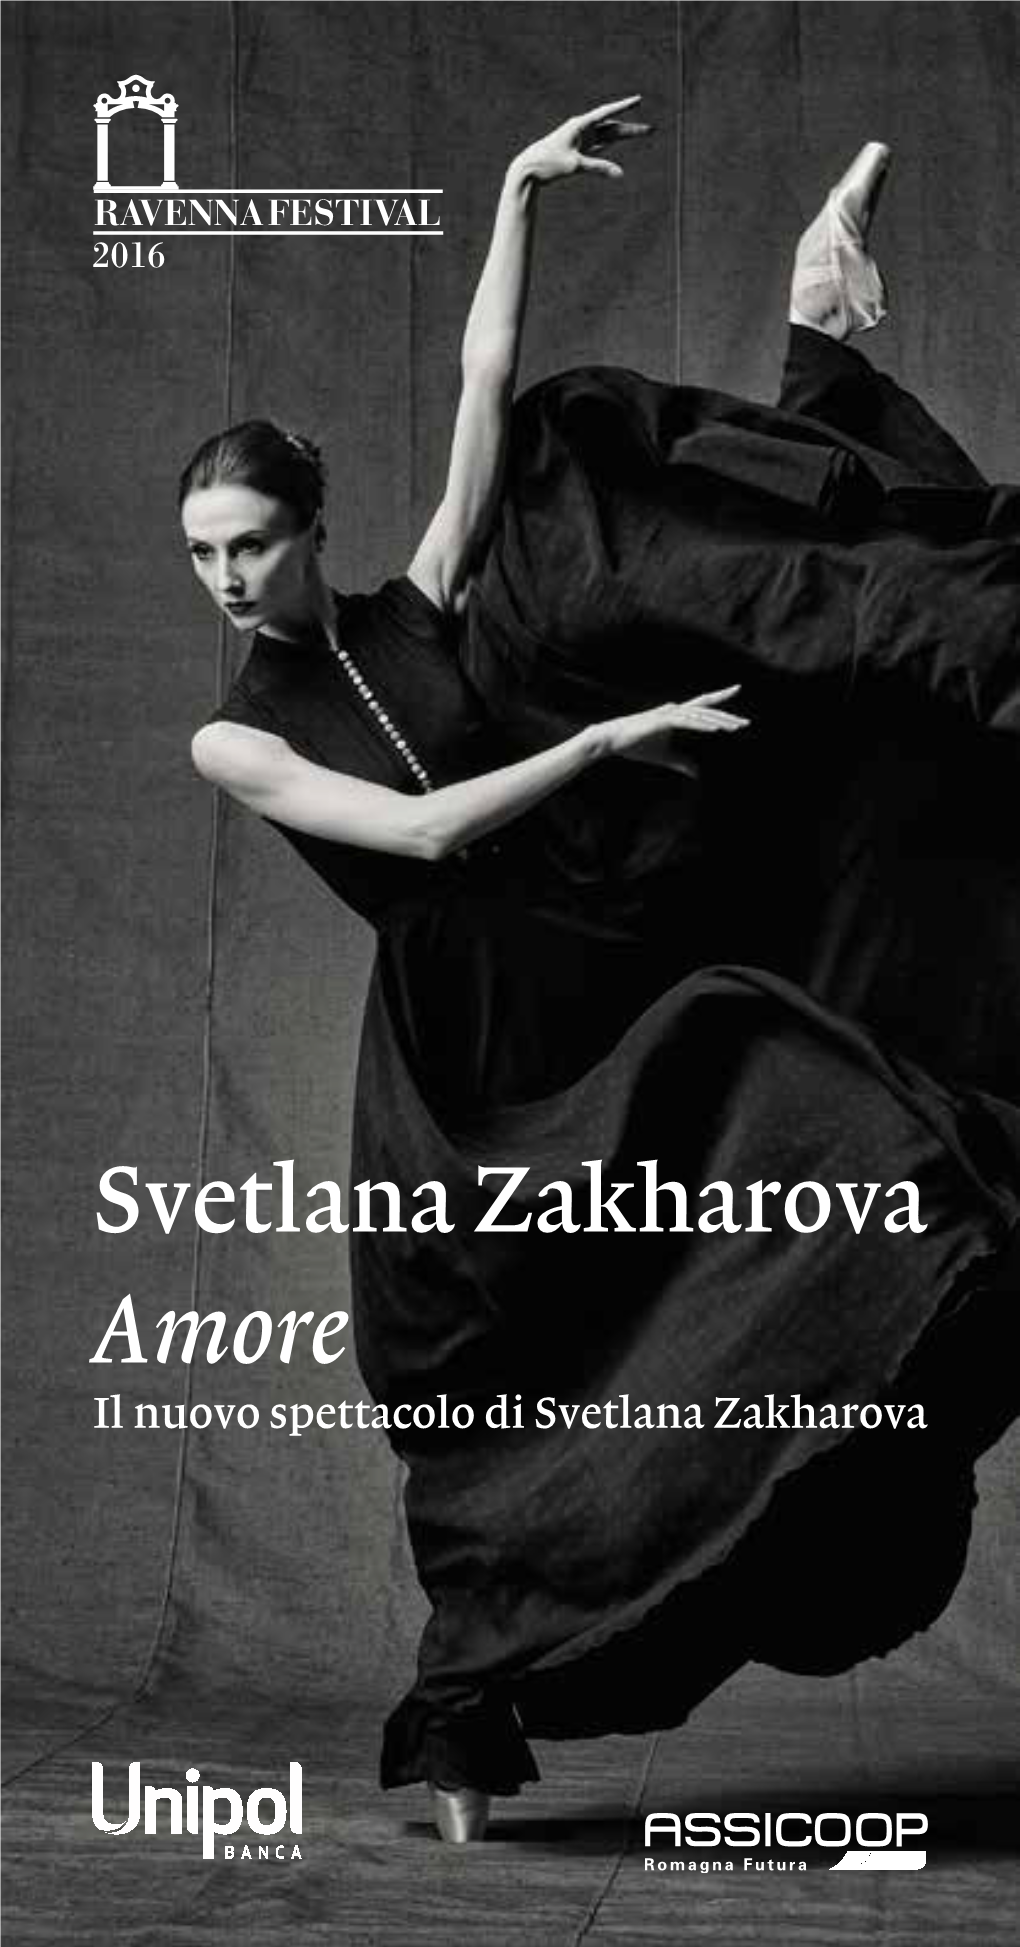 Svetlana Zakharova Amore Il Nuovo Spettacolo Di Svetlana Zakharova Palazzo Mauro De André 30 Giugno, Ore 21.30